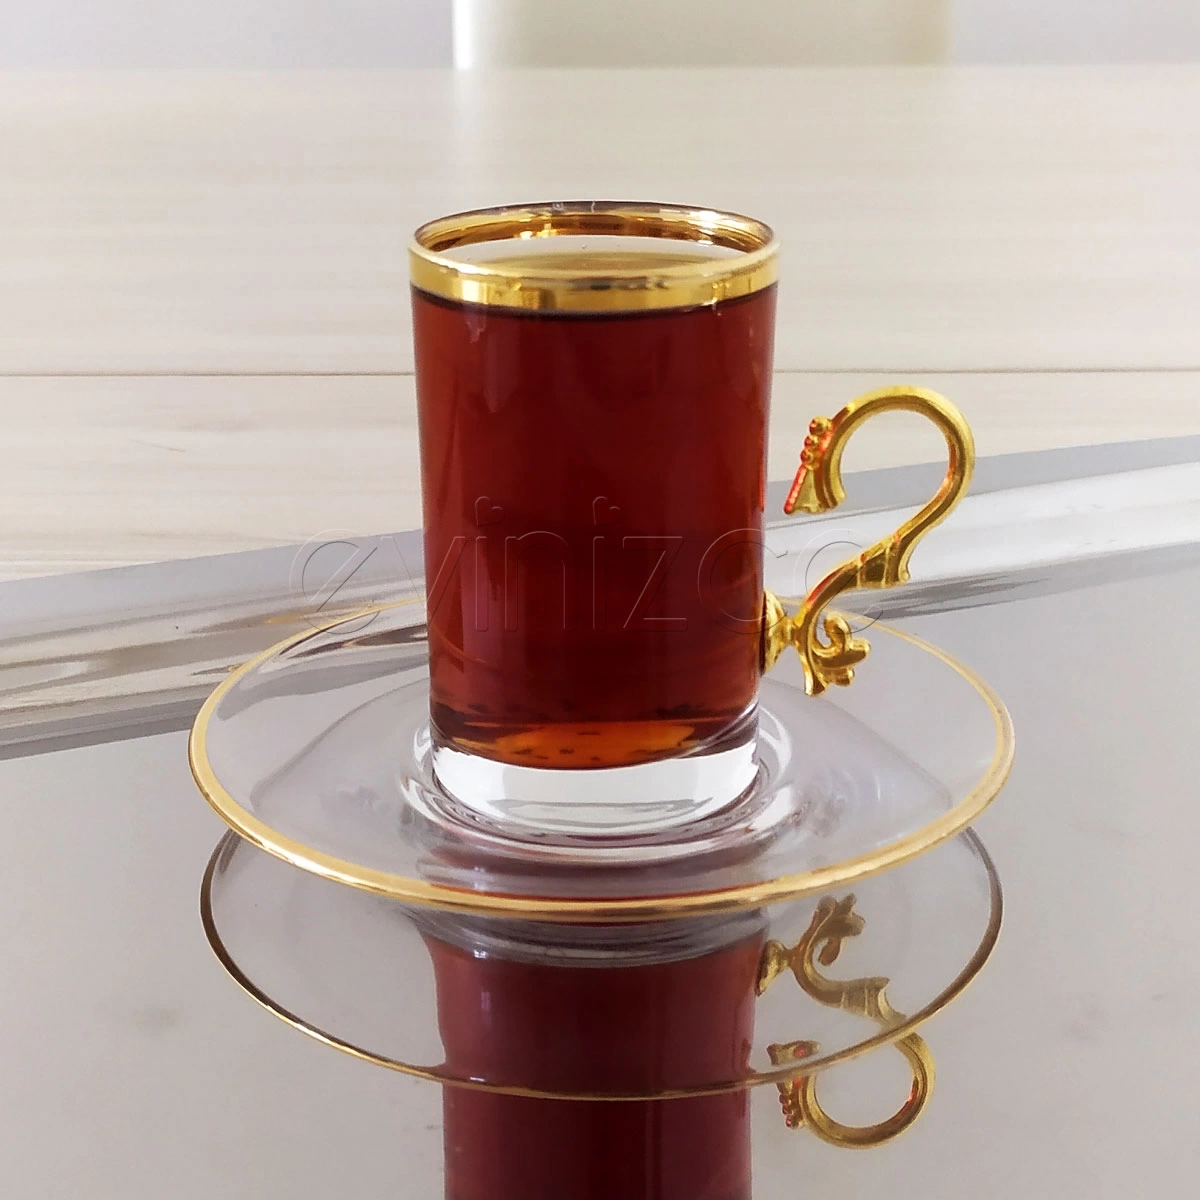 Evinizce Kulplu Yaldızlı Çay Fincanı -6 Kişilik